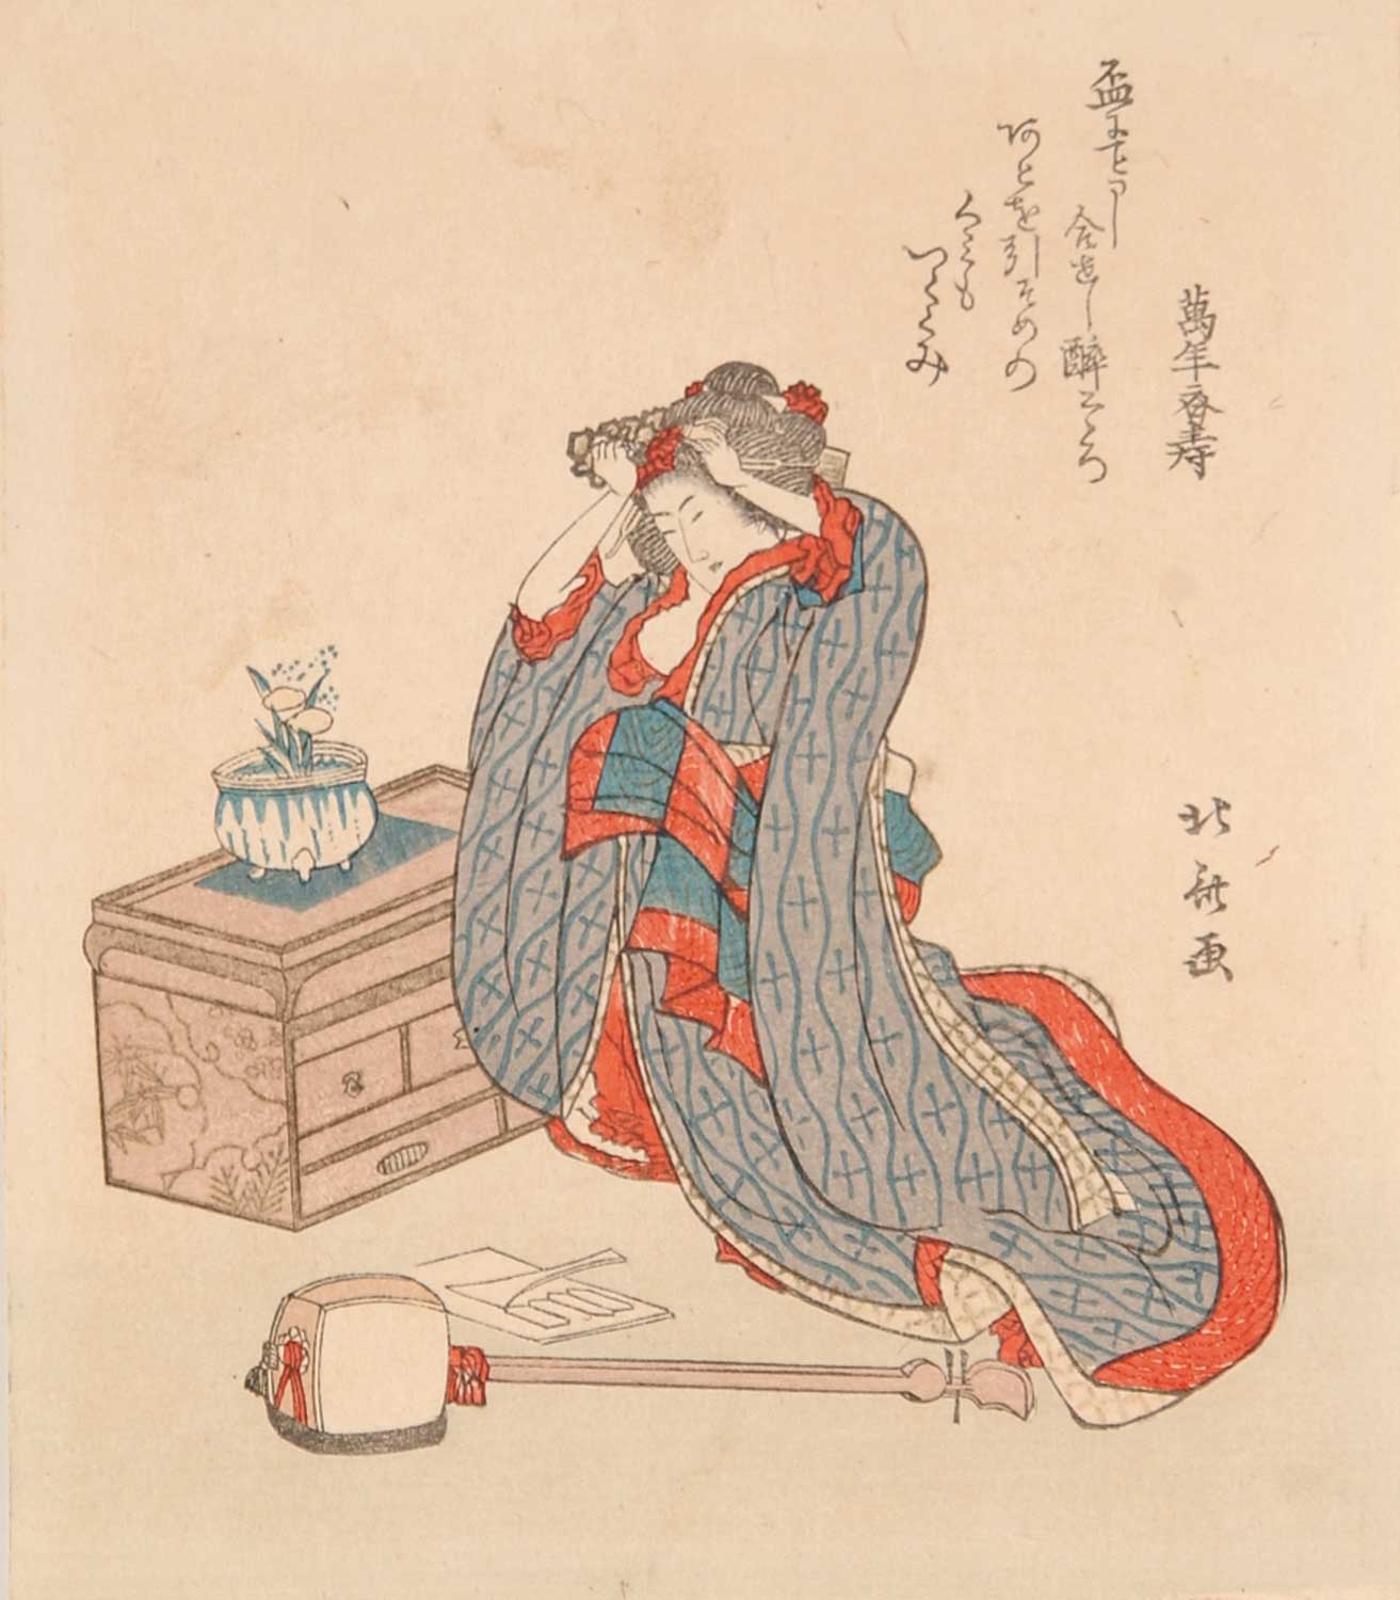 Atributted Katsushika Hokusai - Untitled - Ready for Music